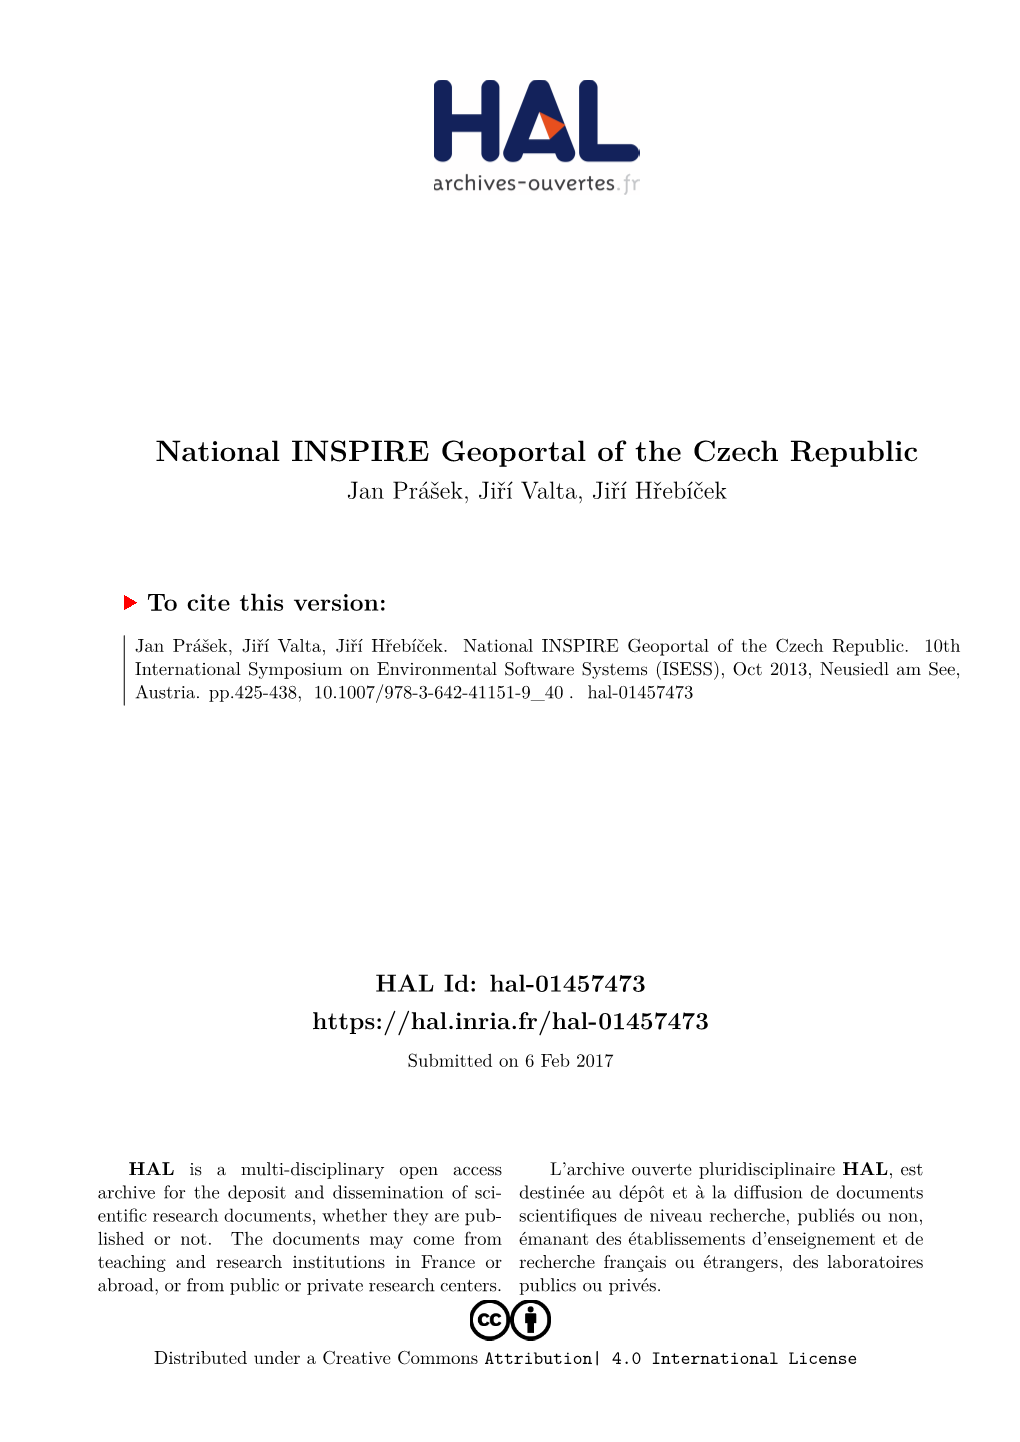 National INSPIRE Geoportal of the Czech Republic Jan Prášek, Jiří Valta, Jiří Hřebíček